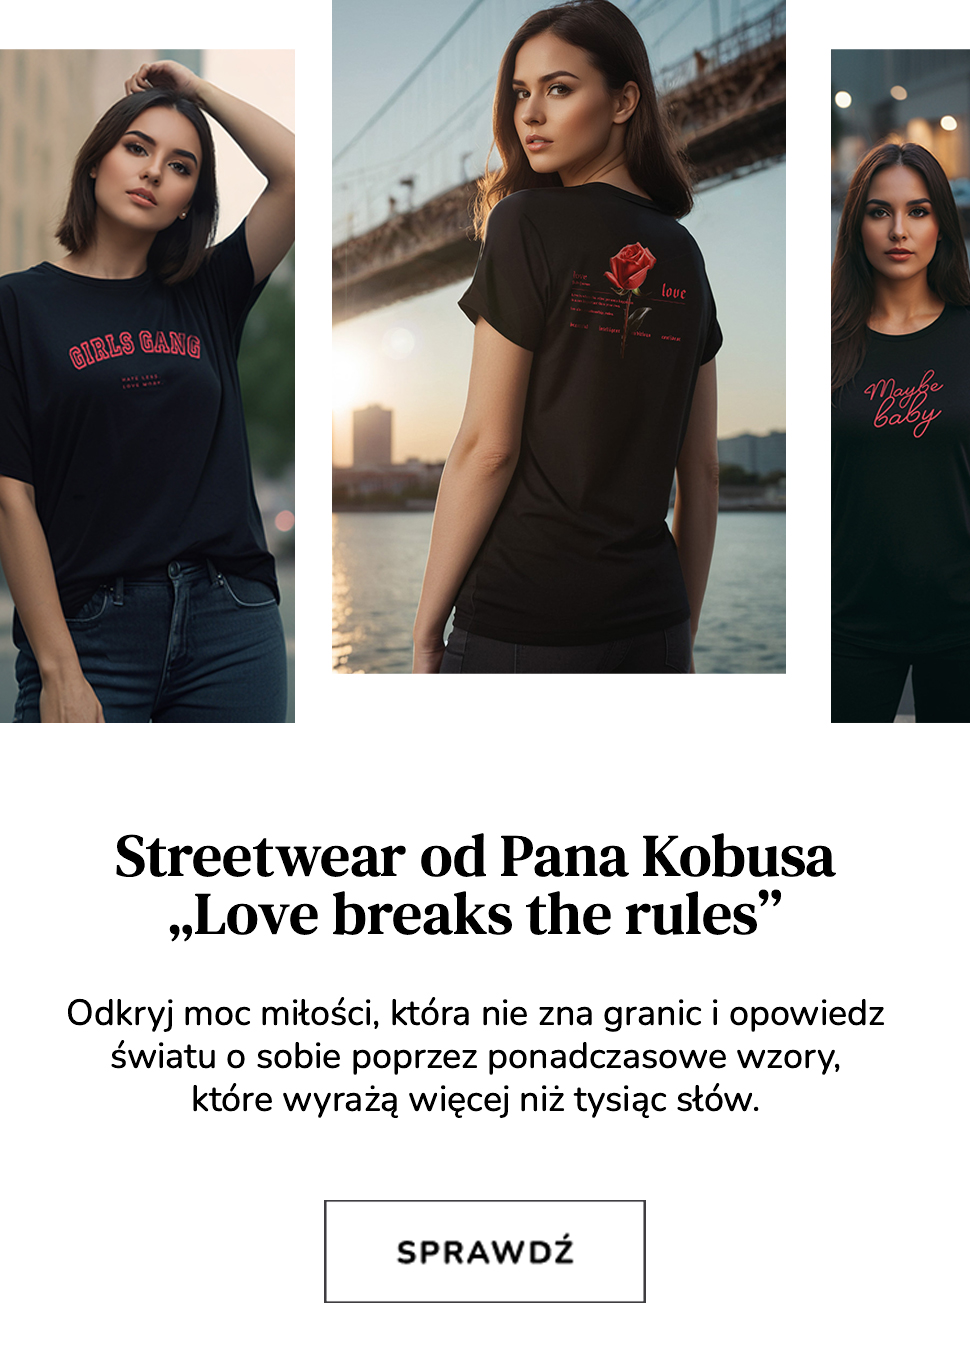 Street wear od Pana Kobusa